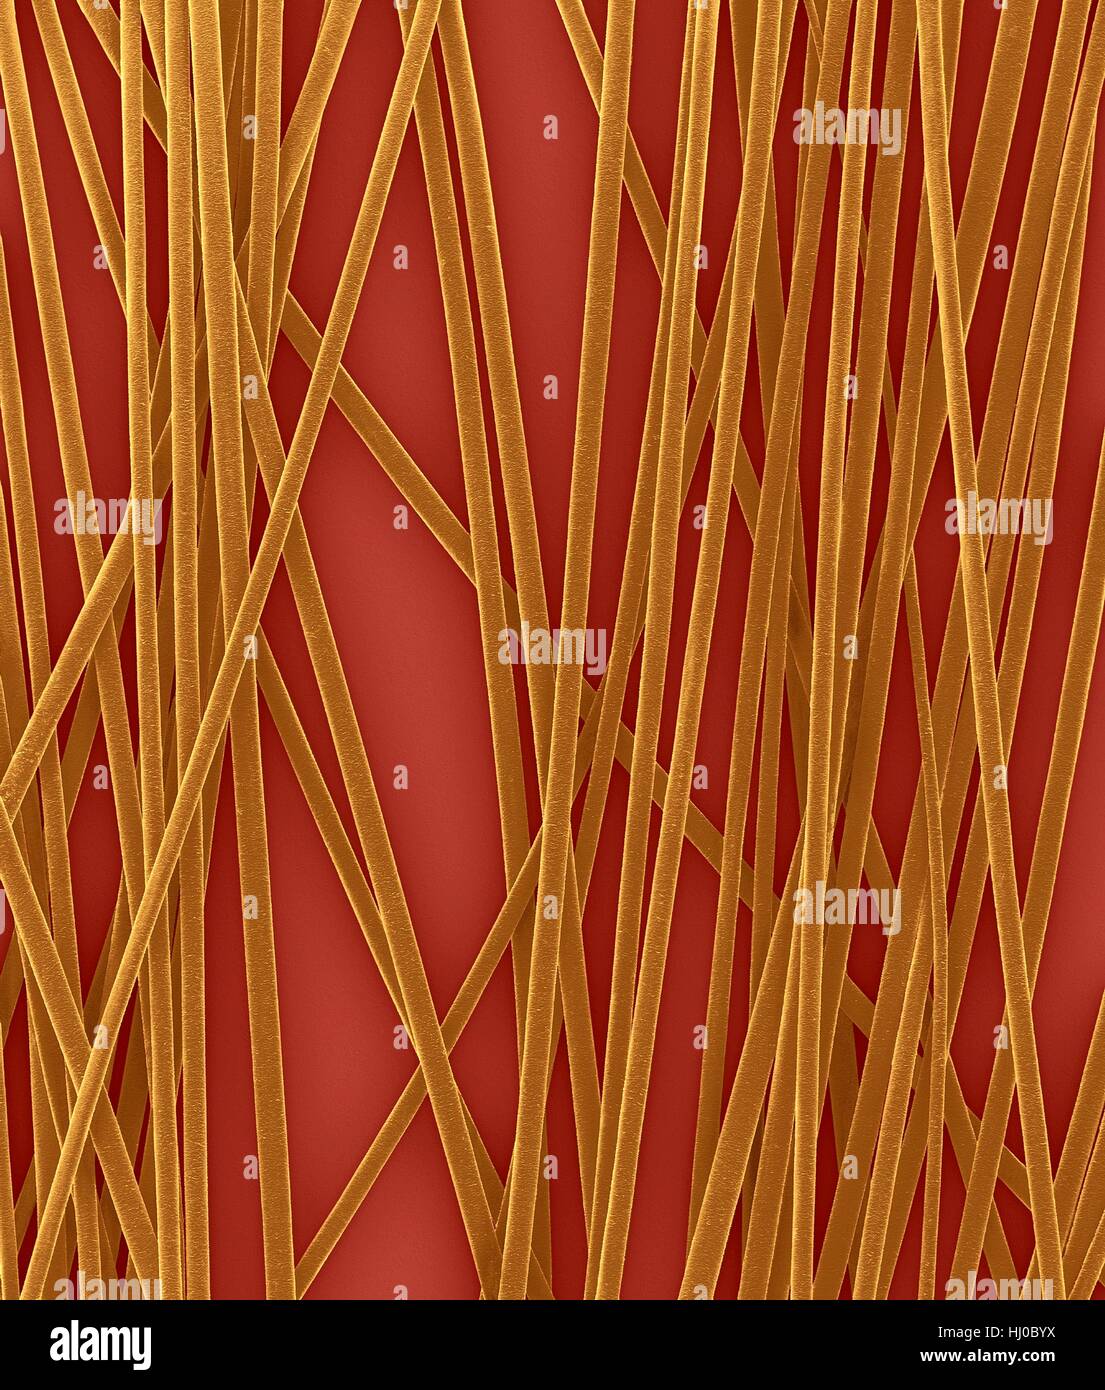 Menschliches Haar Wellen von Kopf, farbige scanning Electron Schliffbild (SEM). Die äußere Schicht des Haares (Cuticula) hat überlappende Schuppen aus Keratin. Diese Skalen werden gedacht, um zu verhindern, dass Haare Matten zusammen. Haar besteht aus faserigen Protein Keratin genannt. Intern gliedert sich Haarschaft in drei konzentrischen Hüllen (Schichten) genannt Medulla, Kortex äußeren Cuticula. Das Haar ist nicht lebendes Gewebe. Haare wachsen aus der Haarwurzel (Birne) in Haut eingebettet. Haarwuchs tritt auf, wenn die epidermale Zellen auf Basis der Haarwurzel teilen. Das Haar ist nicht lebendes Gewebe. Vergrößerung: X6 wenn kürzeste Achse bei 25 Millimetern gedruckt. Stockfoto